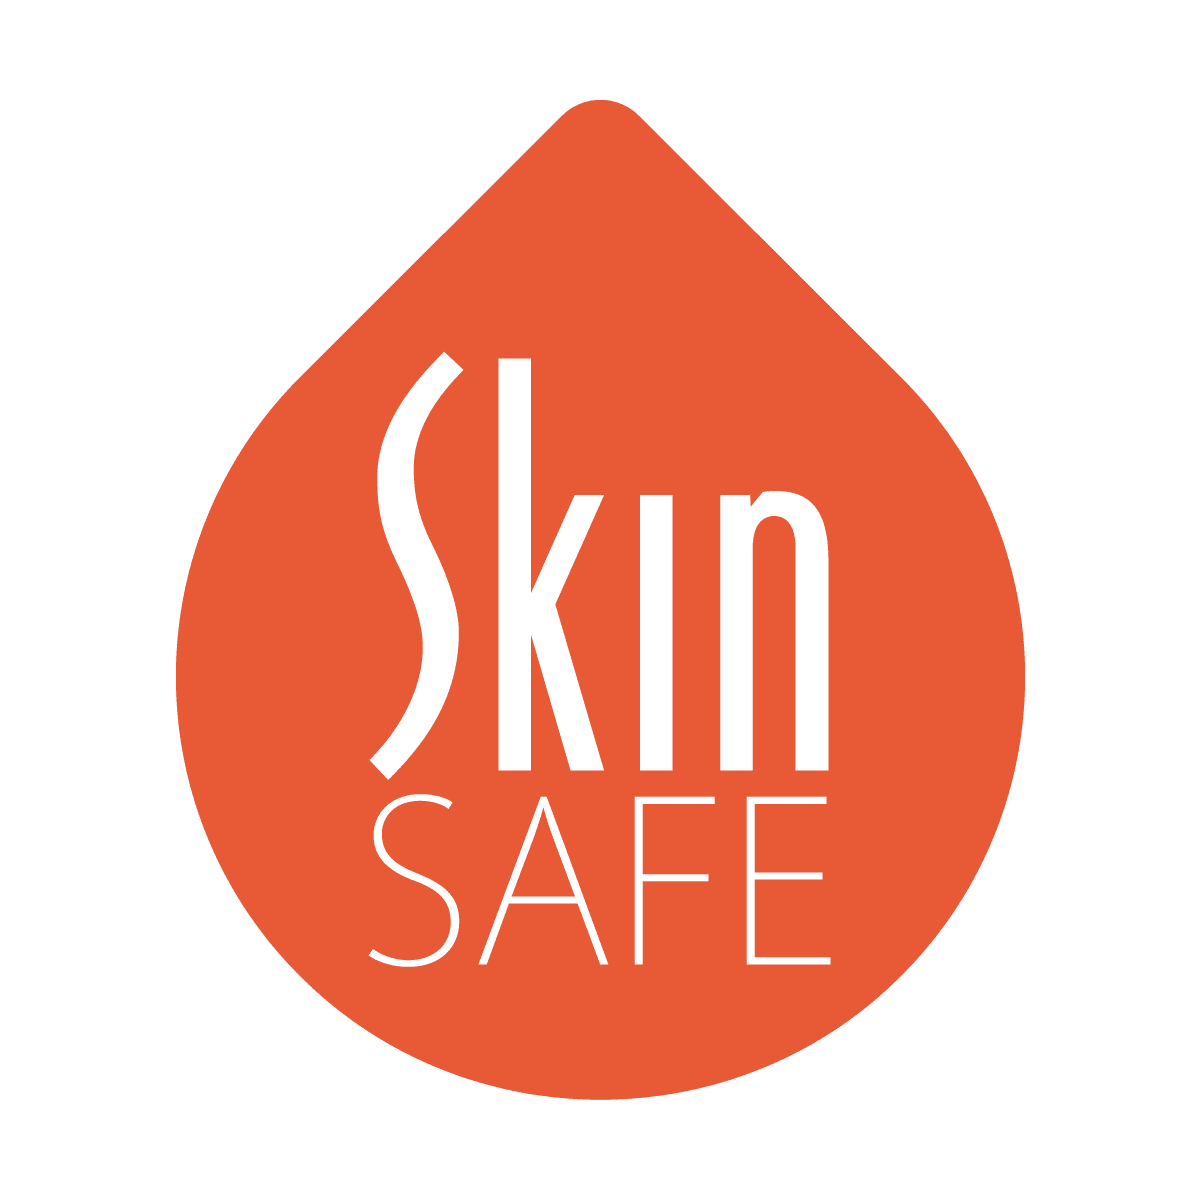 pore cleanser skin safe